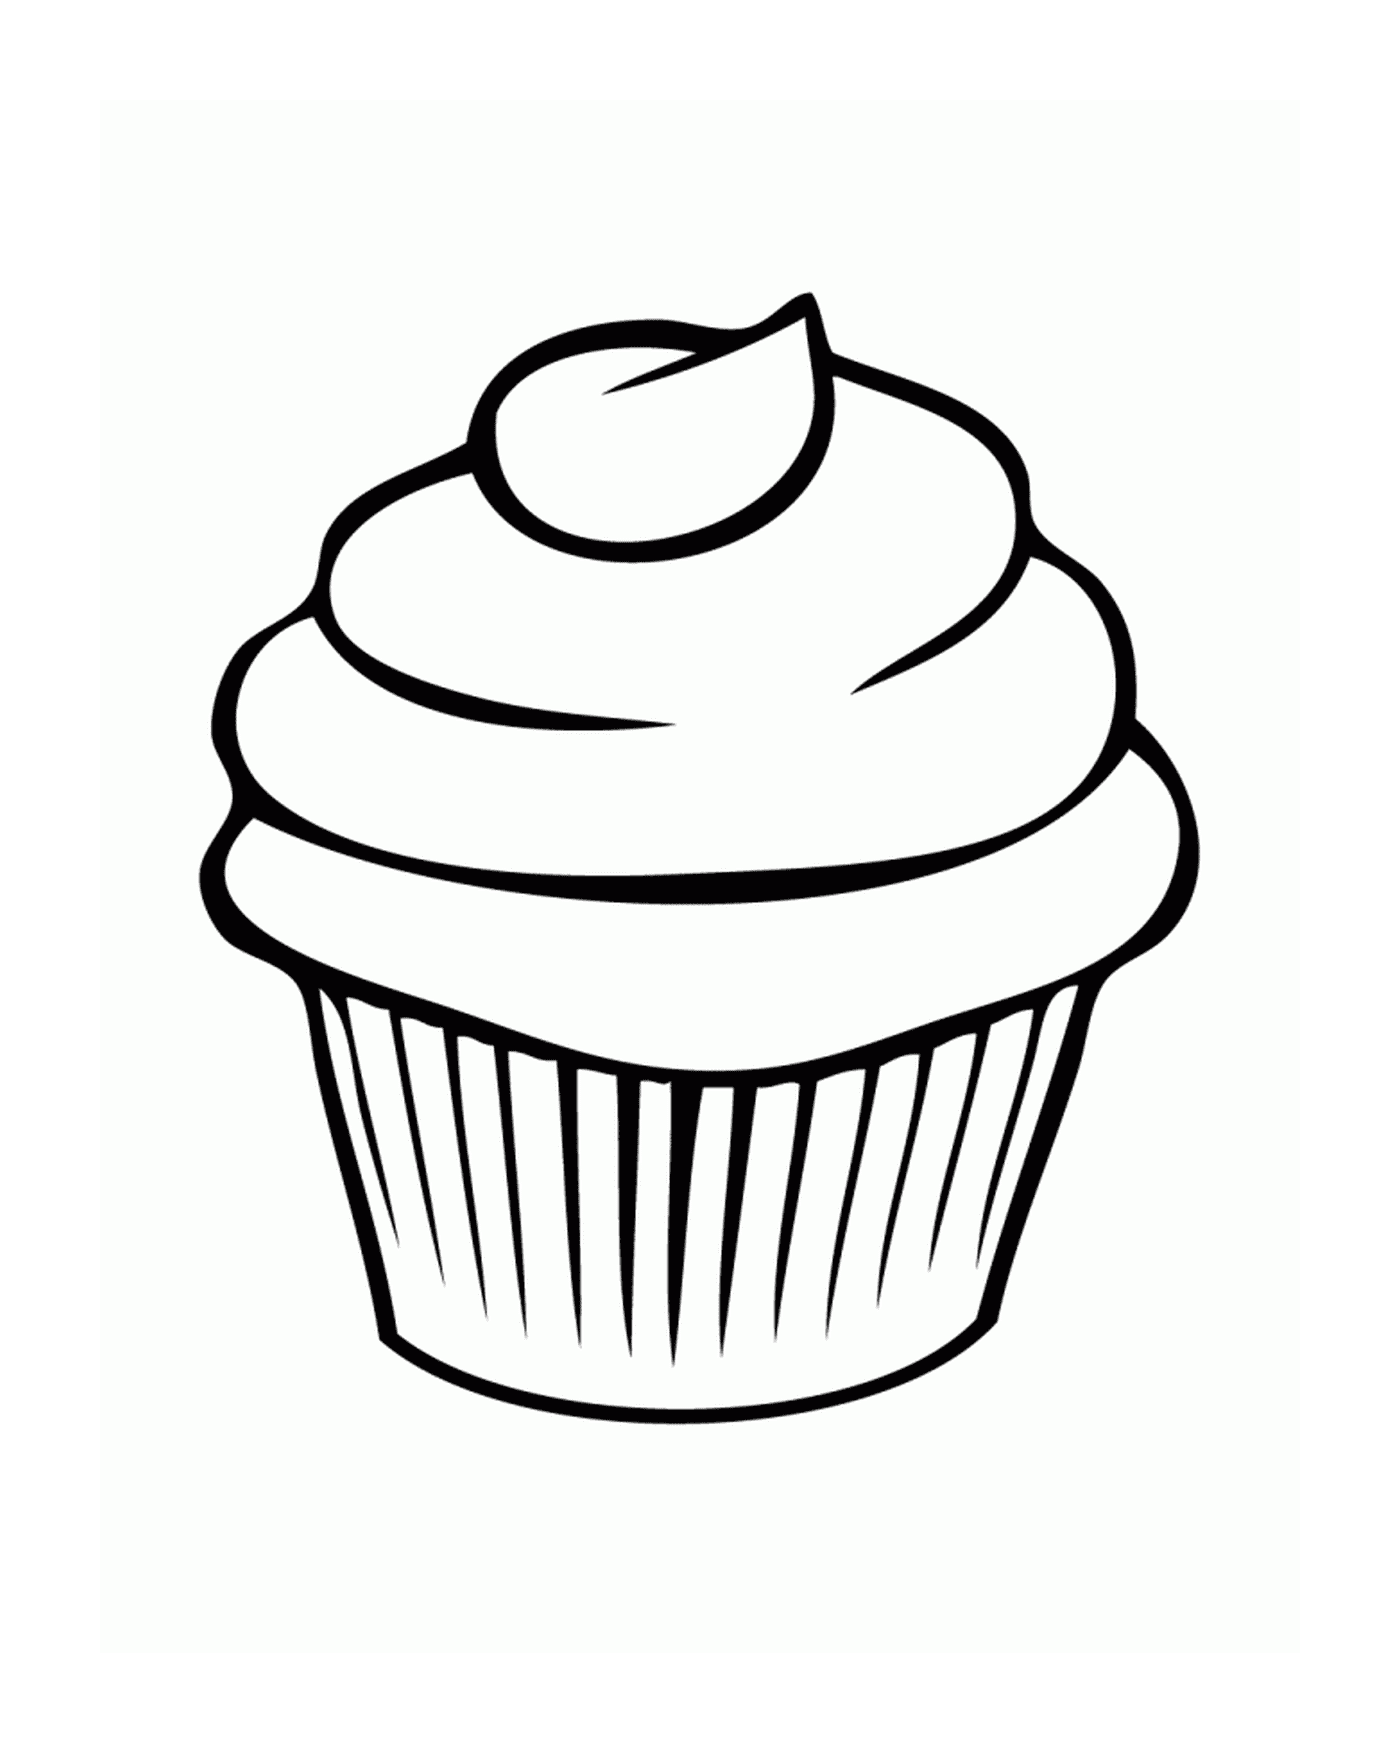  Um cupcake simples e fácil 